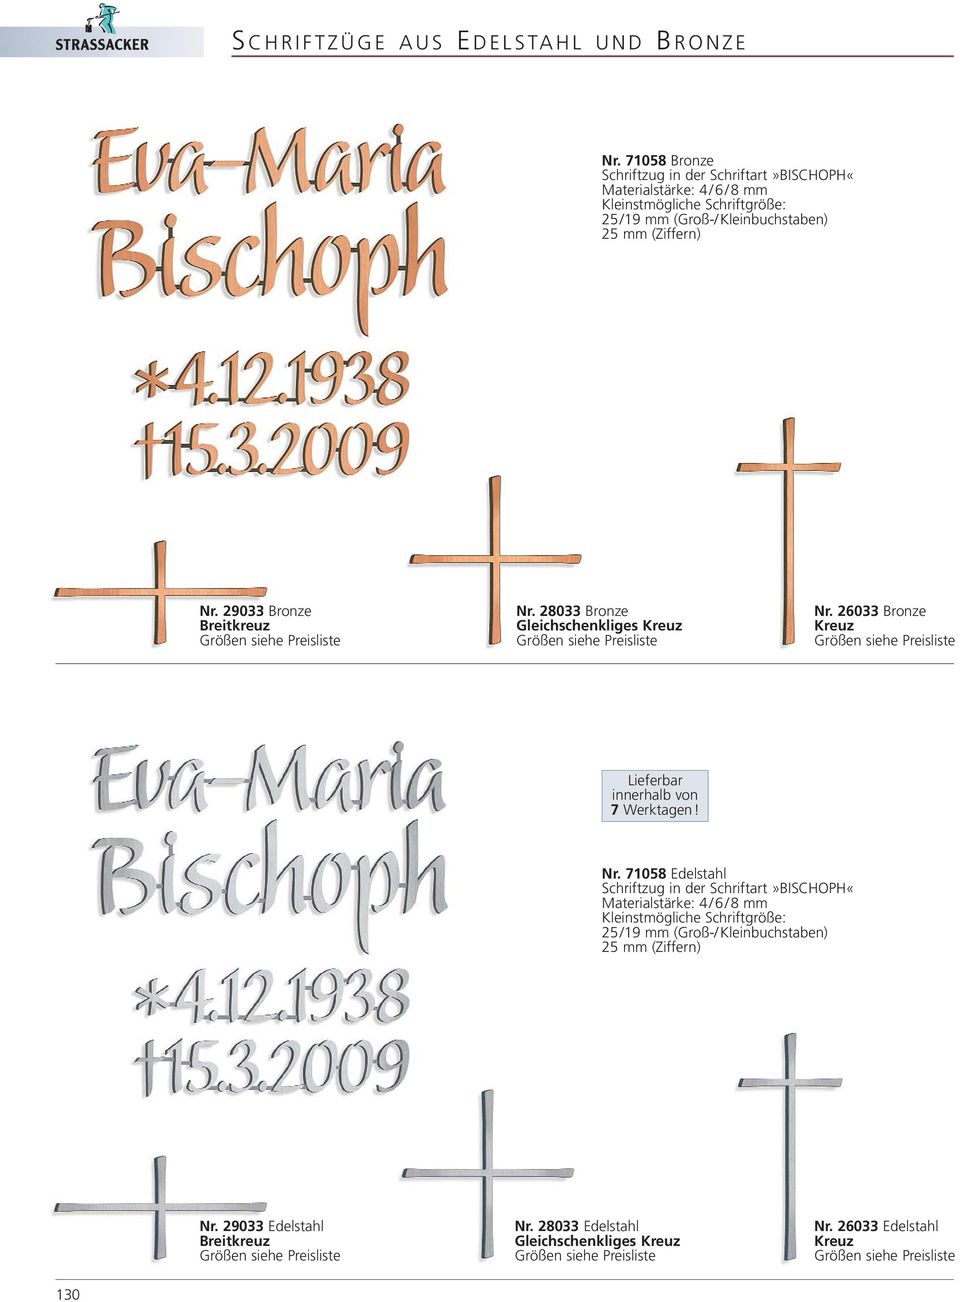 71058 Edelstahl Schriftzug in der Schriftart»BISCHOPH«25/19 mm (Groß-/ Kleinbuchstaben) 25